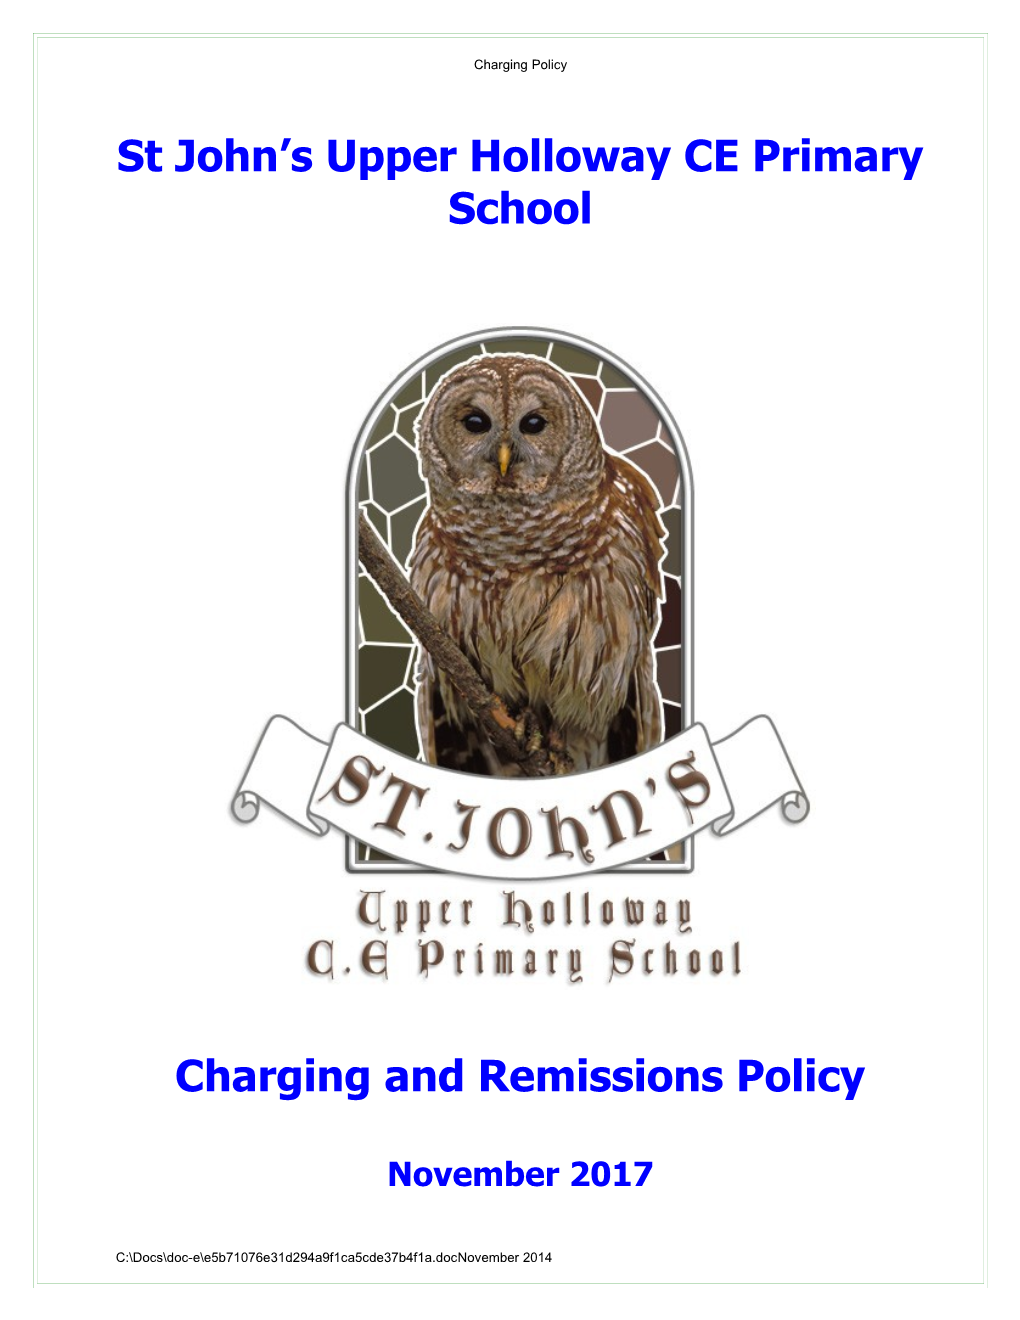 St John S Upper Holloway